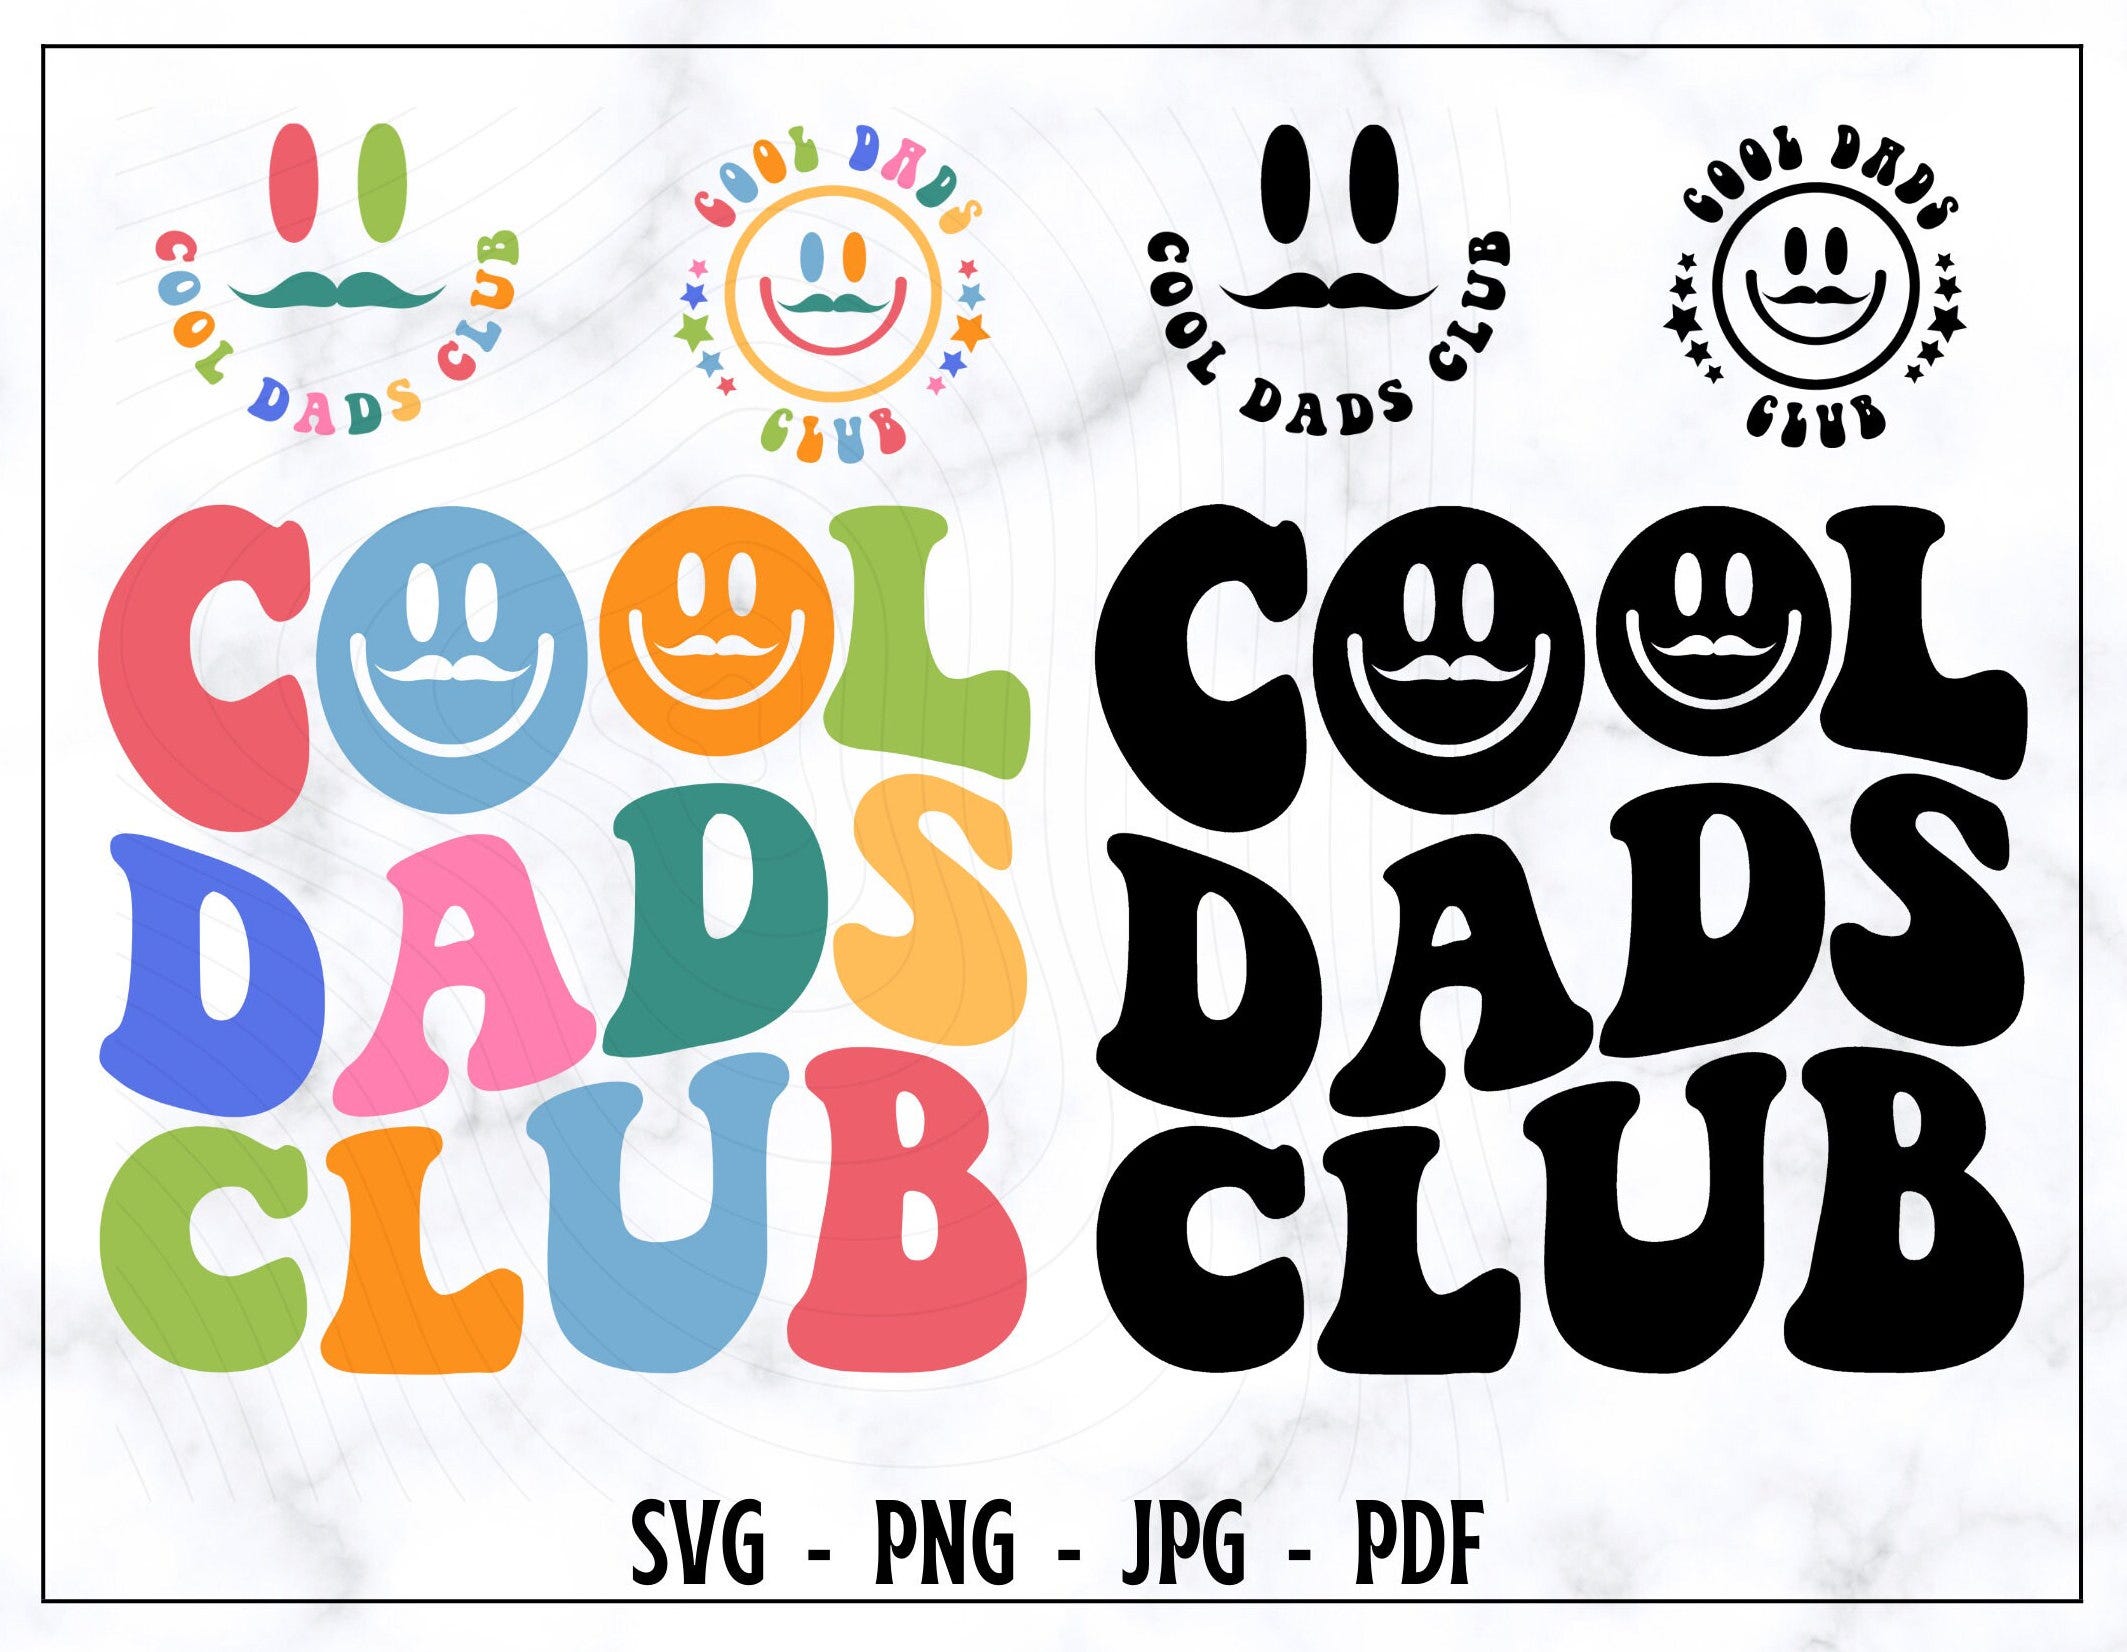 Cool Dads Club SGV, Cool Dads Club PNG, Cool Dads Club Shirt Svg, Dads Club Shirt Png, Funny Dads Svg, Smıley Dads Svg, Wavy Text Svg